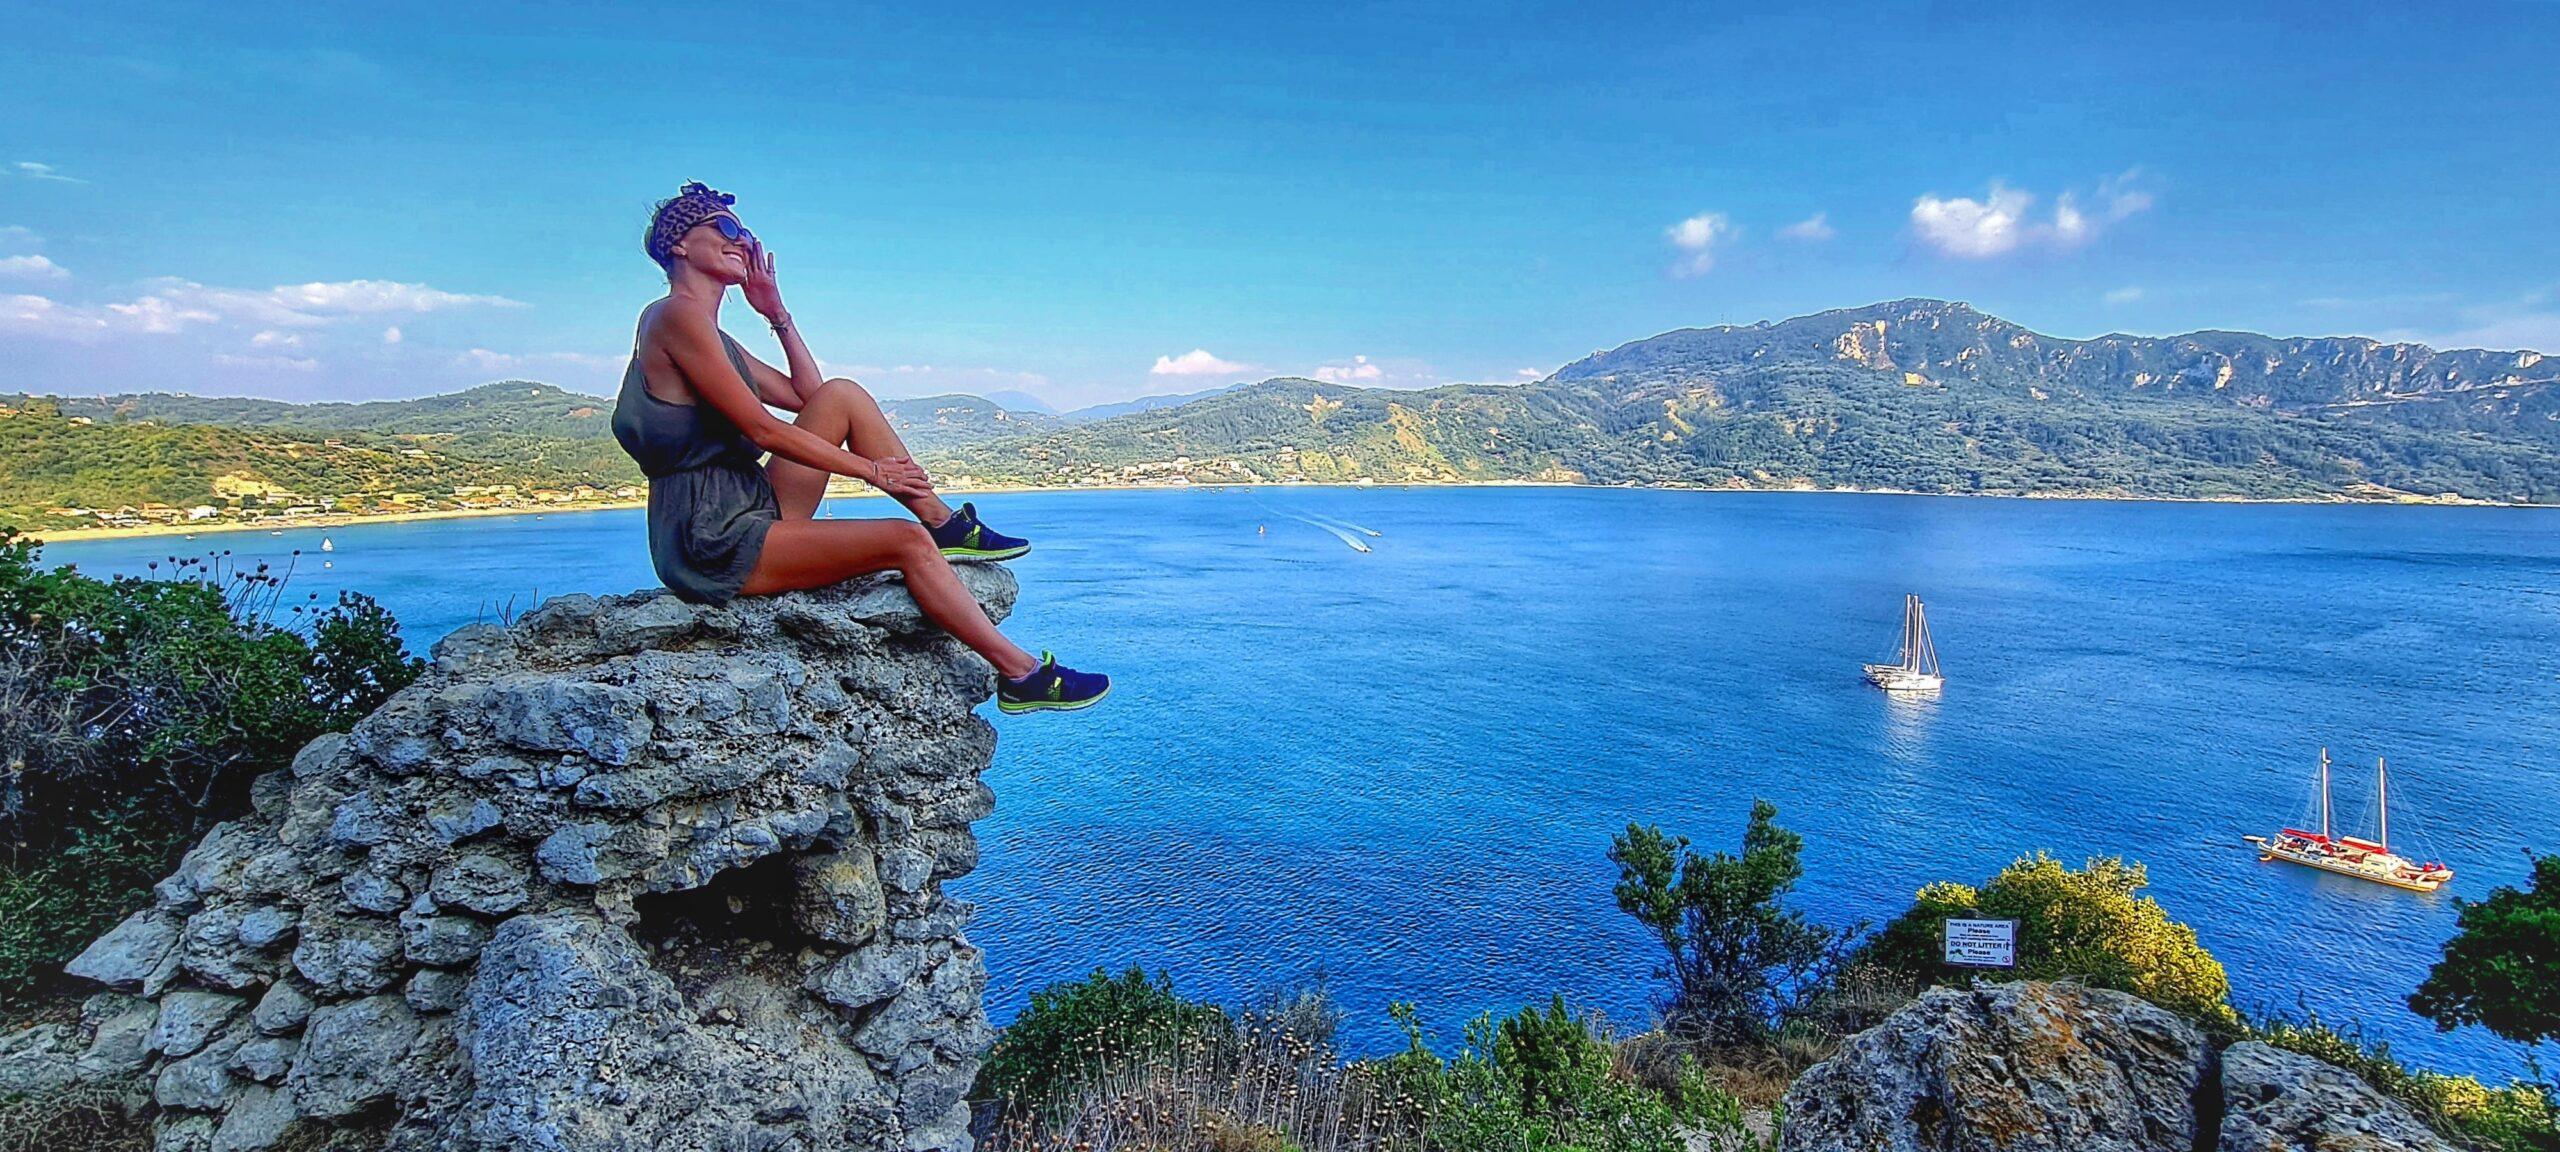 Wyspa szczęścia – Korfu – Przewodnik w pigułce, najważniejsze informacje, TOP10 MUST SEE